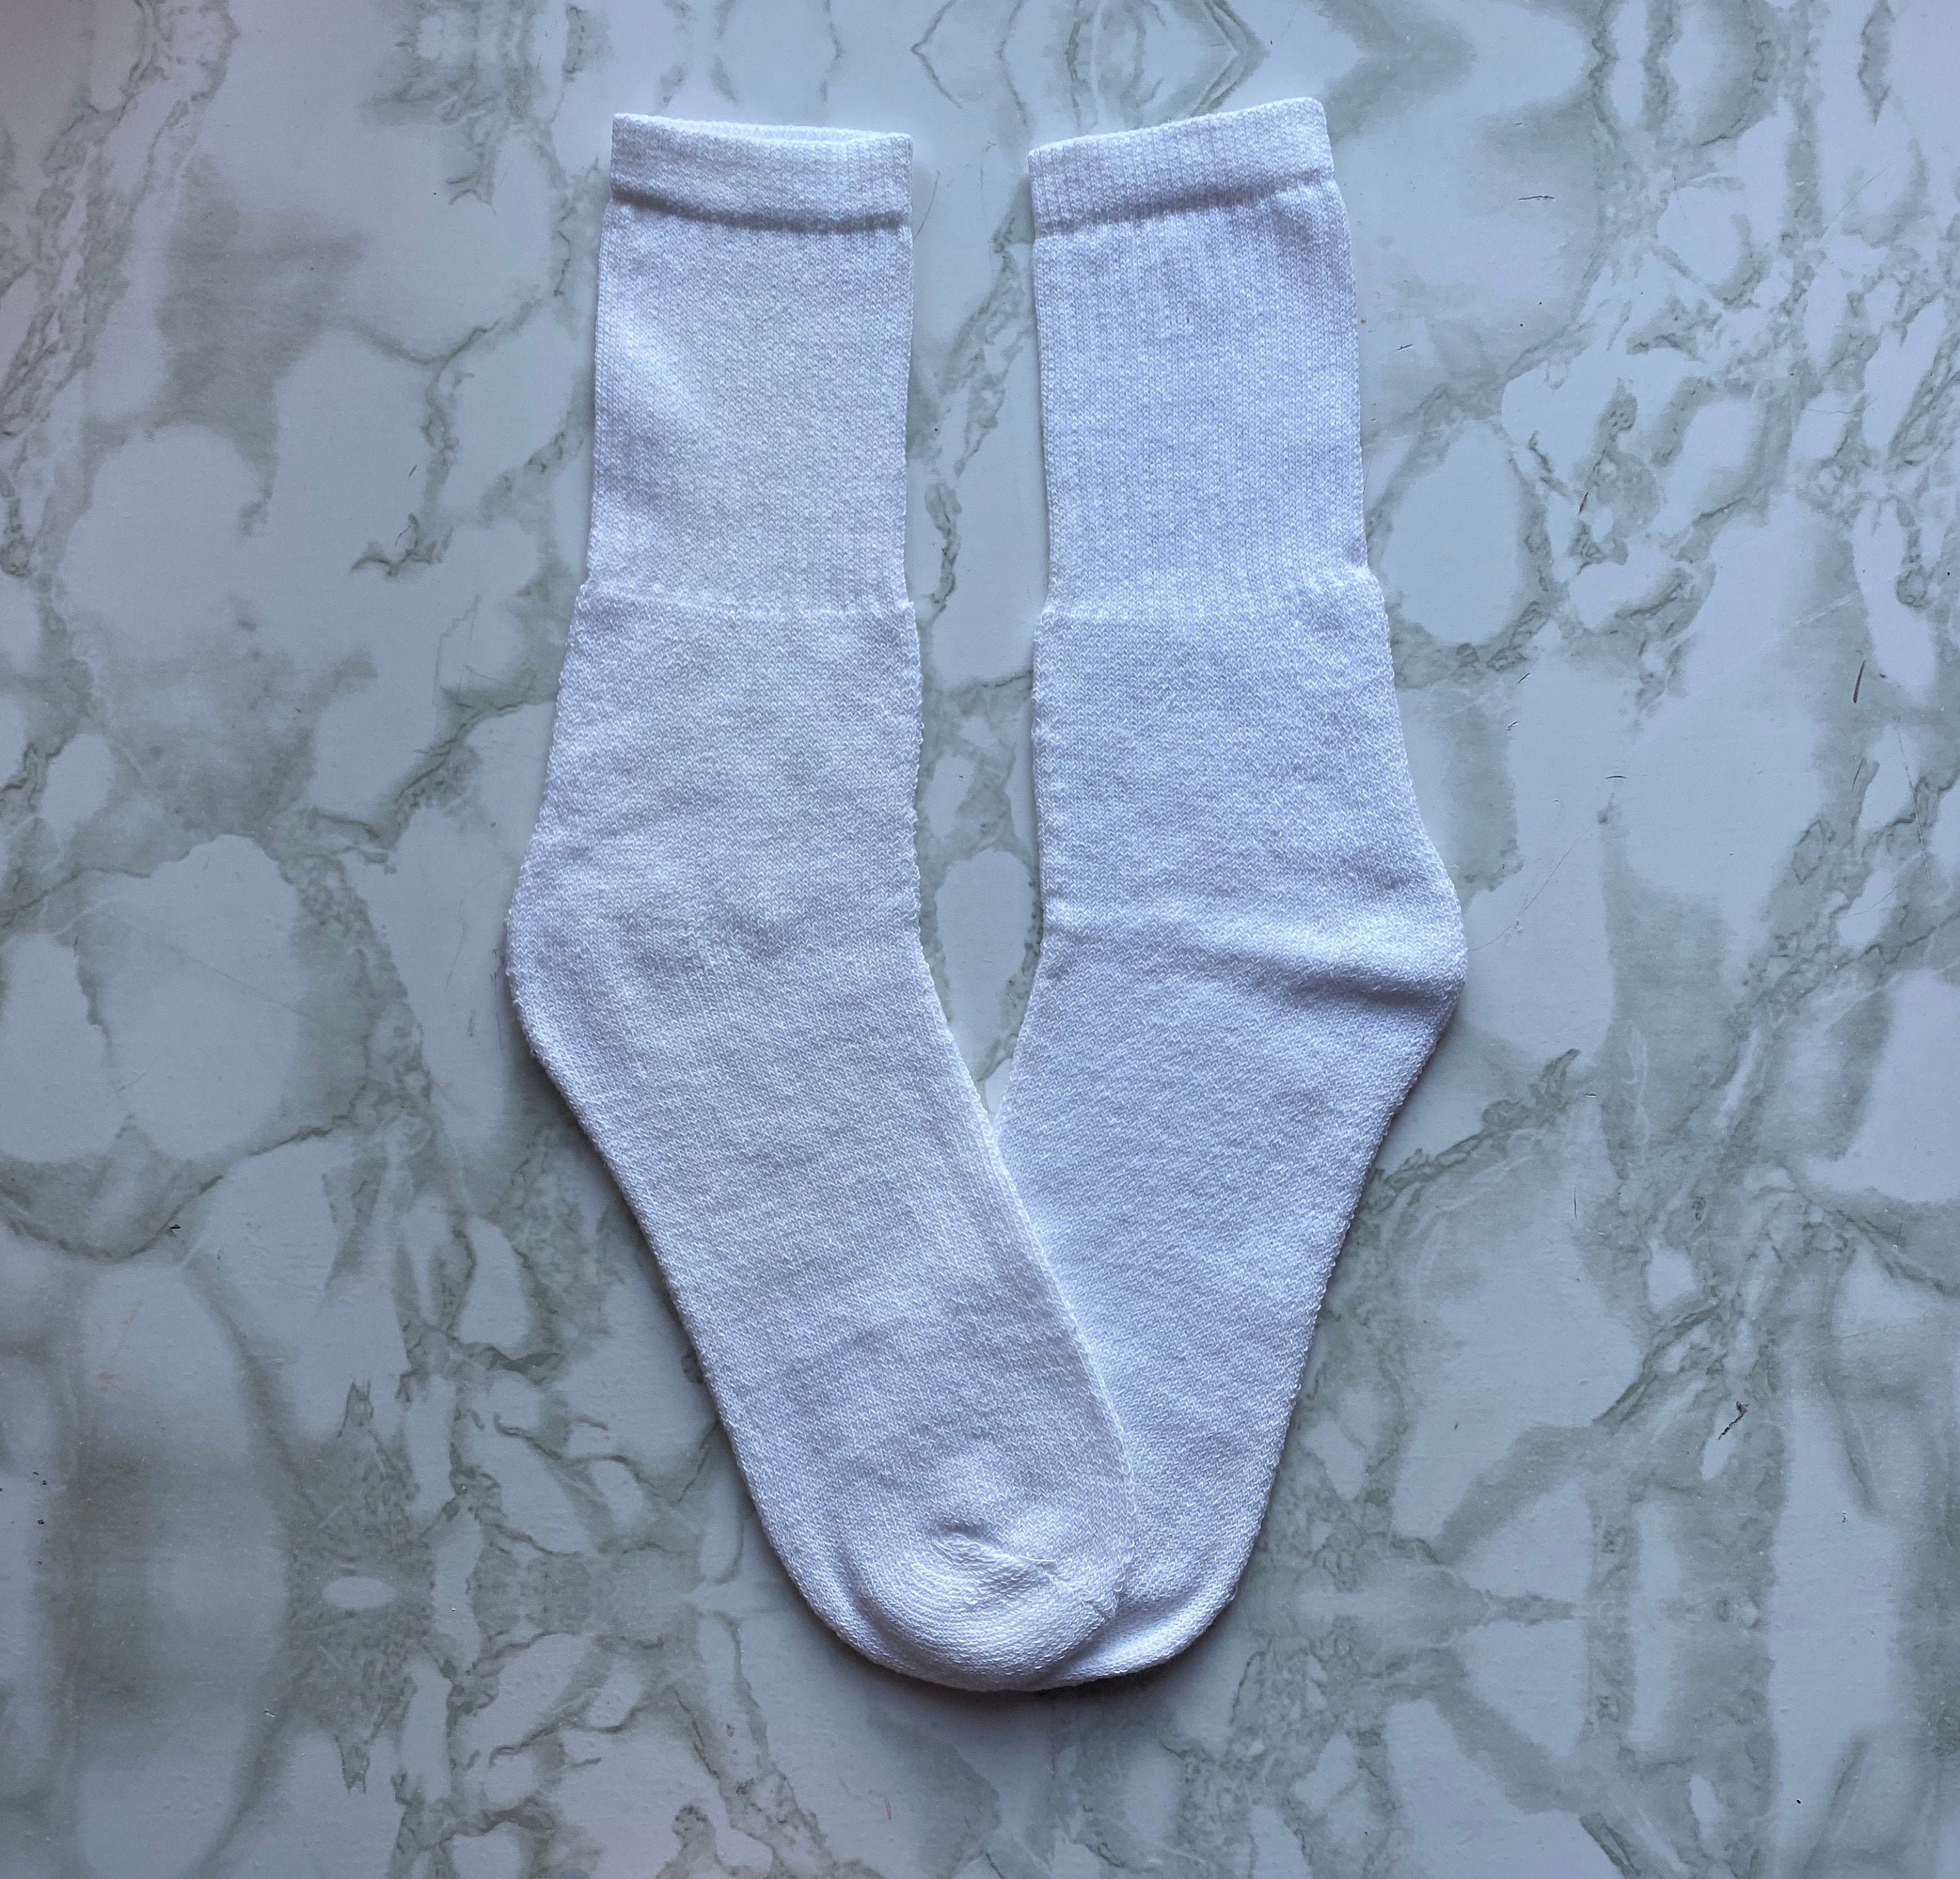 Miniso Men's Vintage Low Cut Socks 2Pairs (Brick Red) — MSR Online